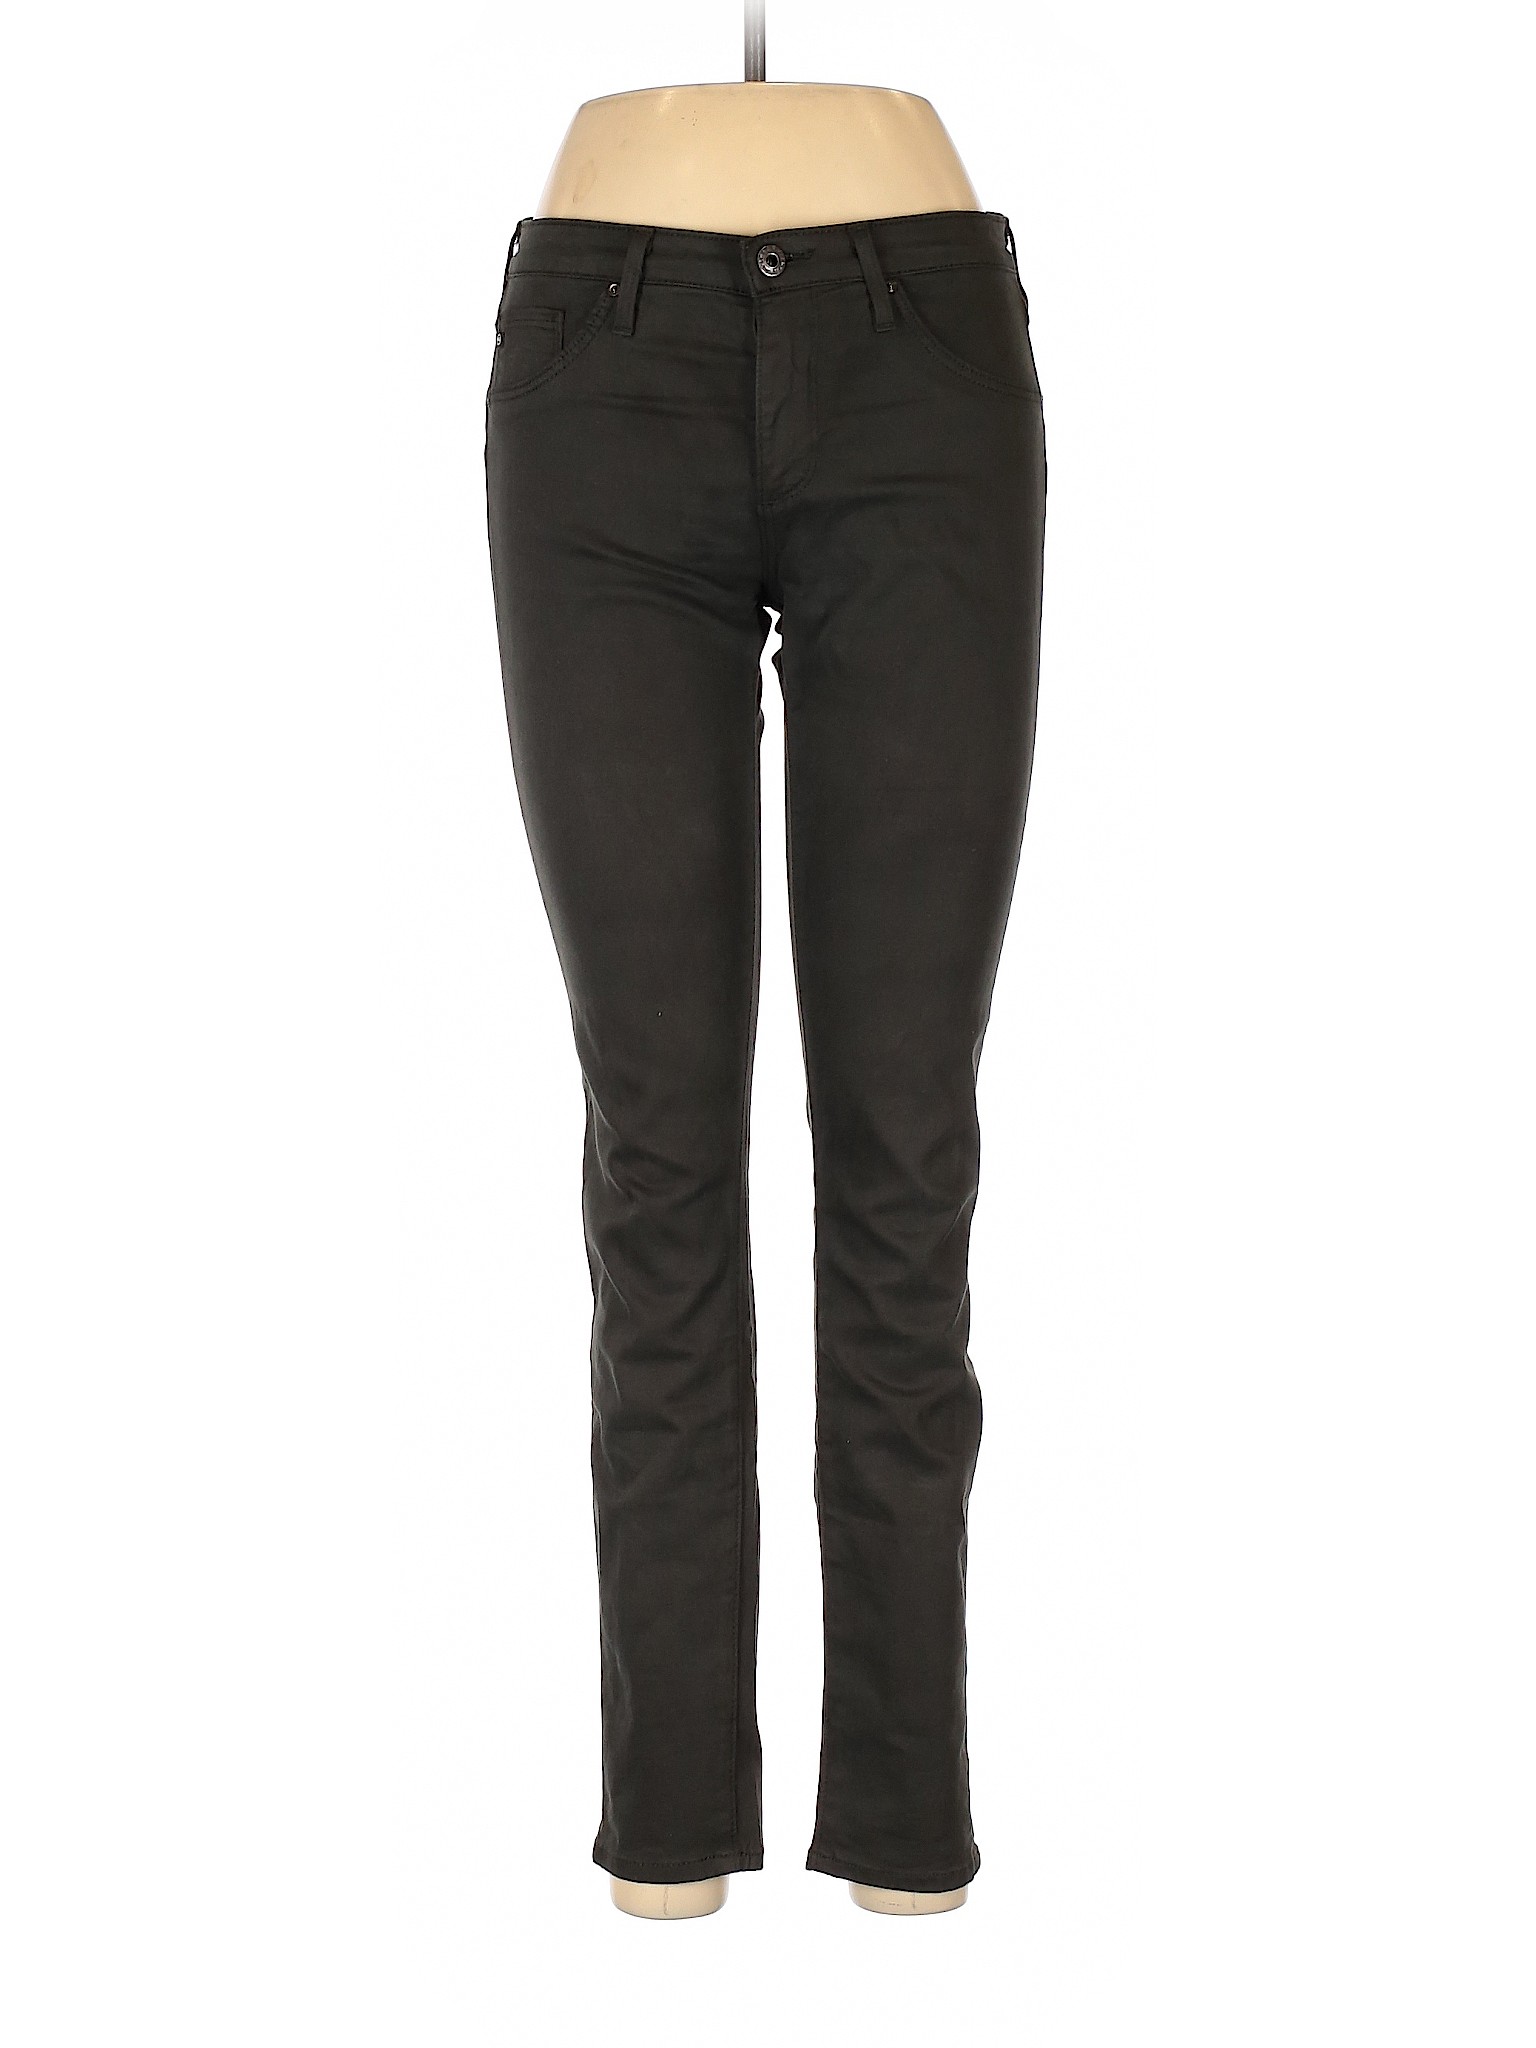 Adriano Goldschmied Women Black Jeans 27W | eBay